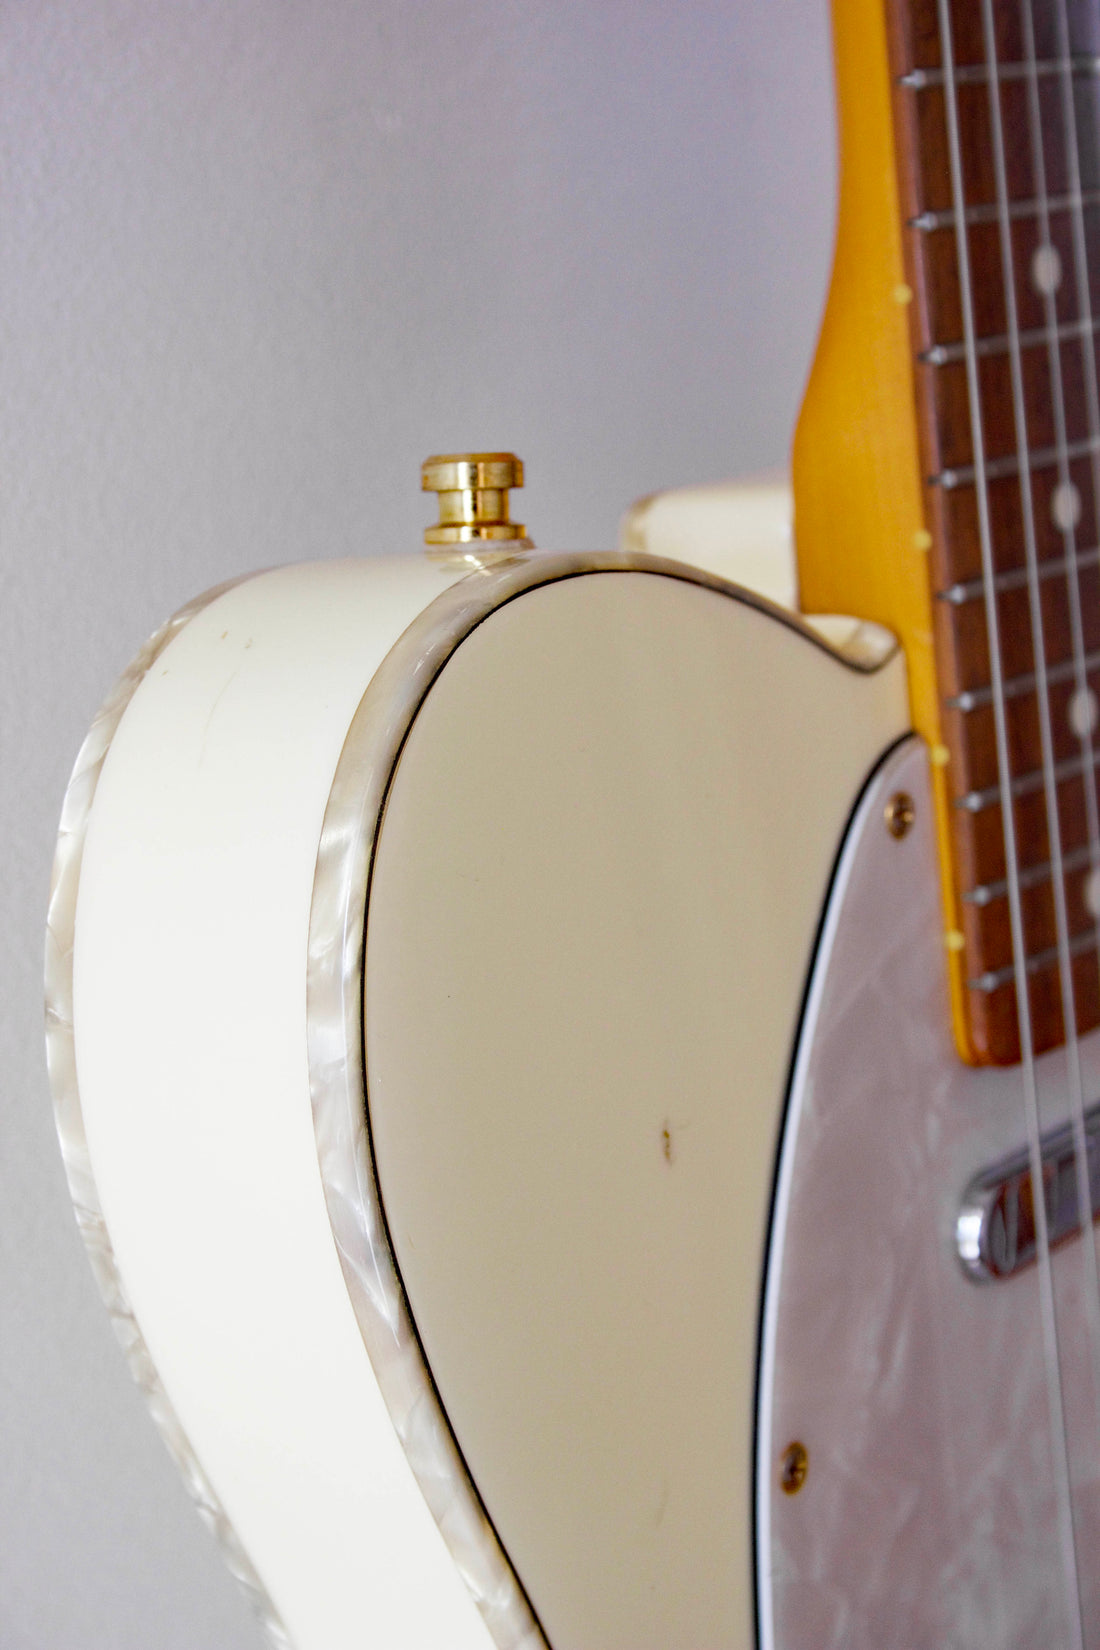 Fender Teleccaster 50th Anniversary Model Cream 1992